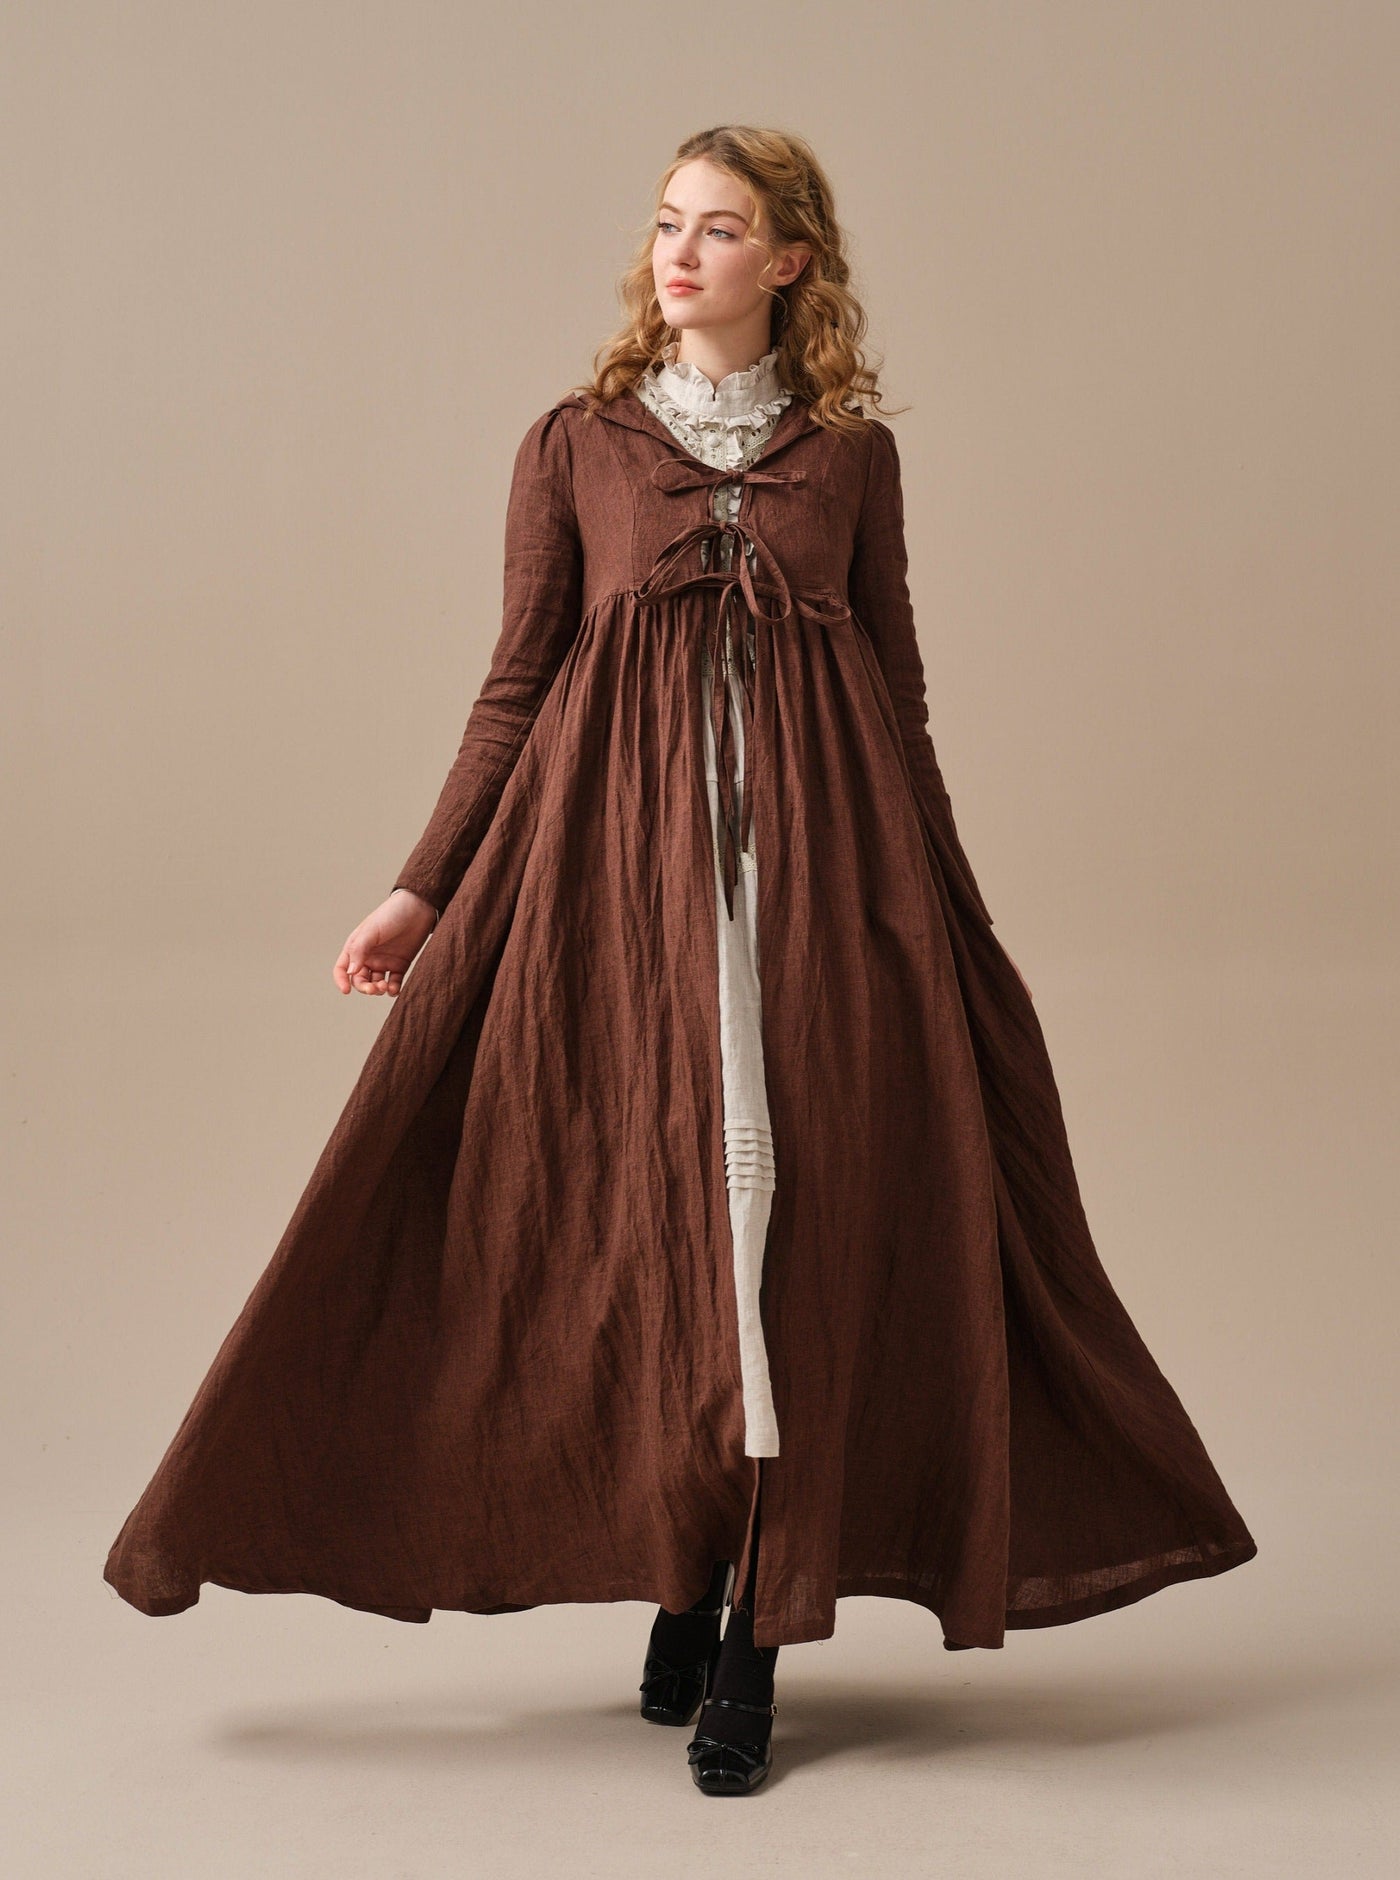 Jane 31 | hooded 100% linen coat dress